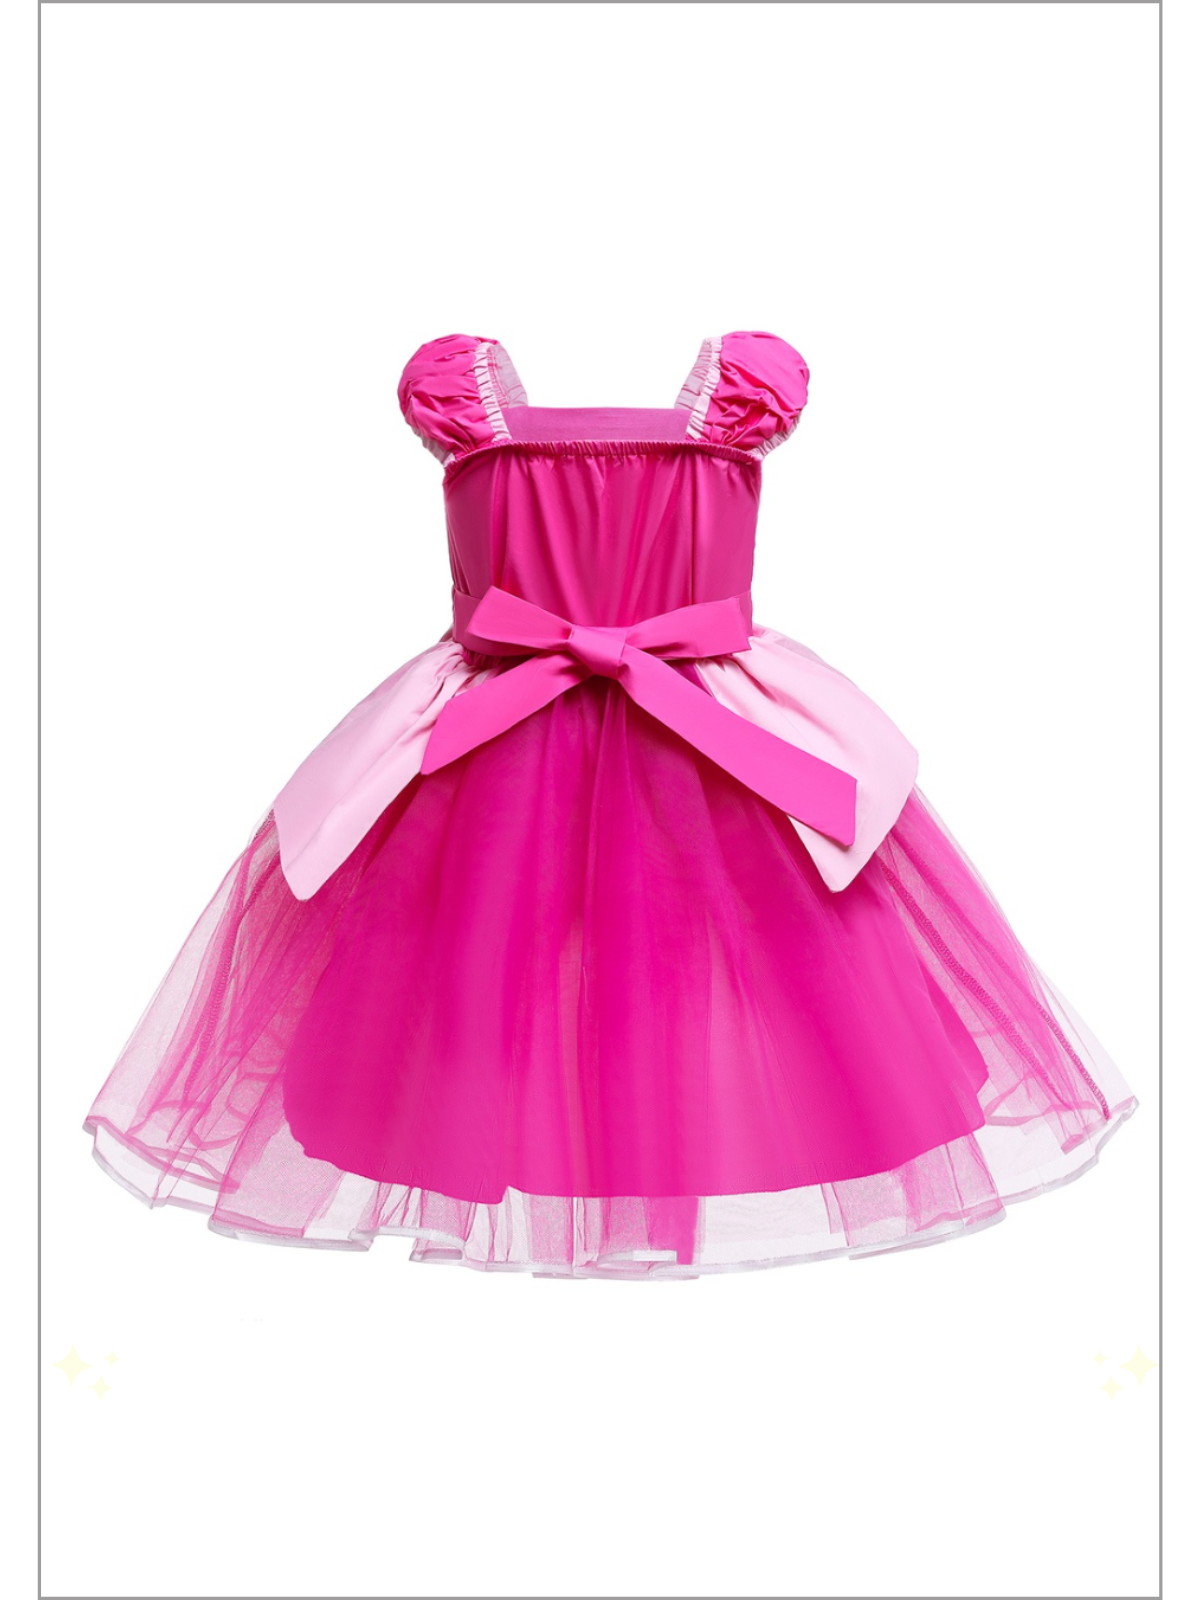 Mia Belle Girls Pink Princess Tutu Dress | Princess Dress Up